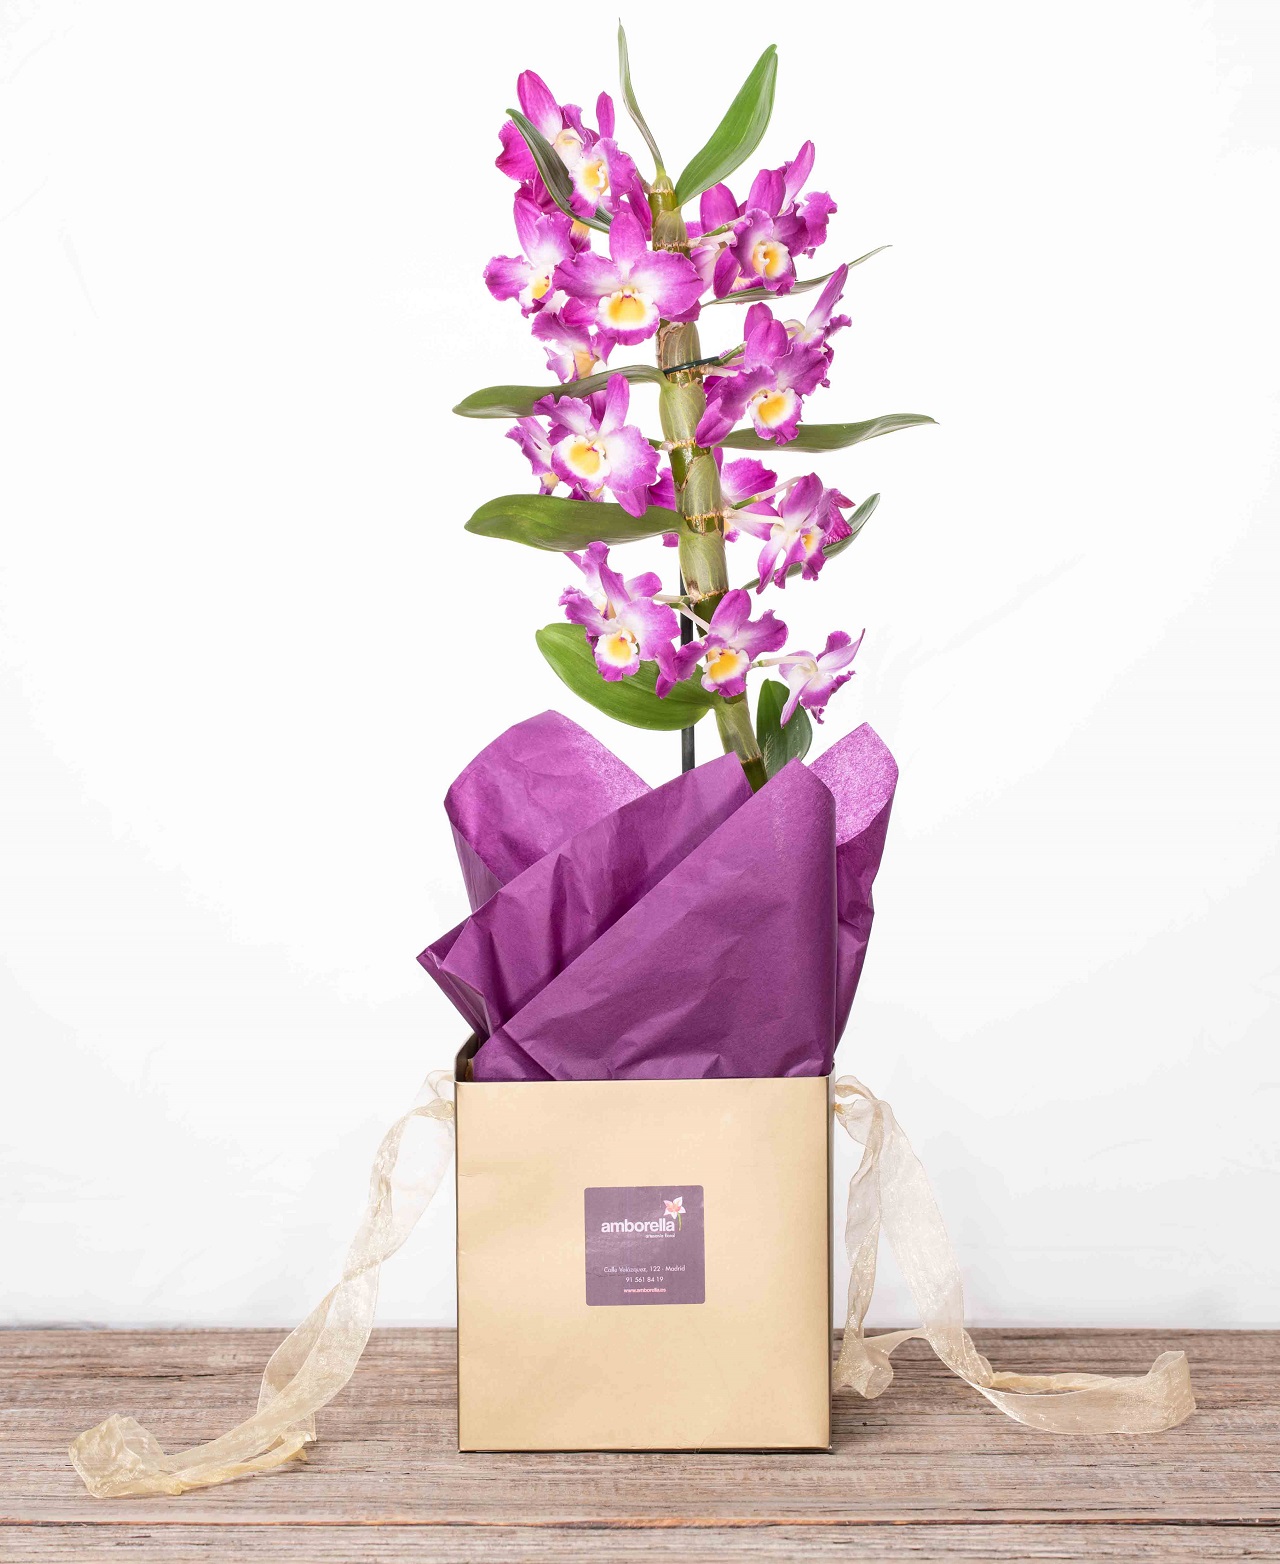 Comprar orquídea en bolsa para regalo online